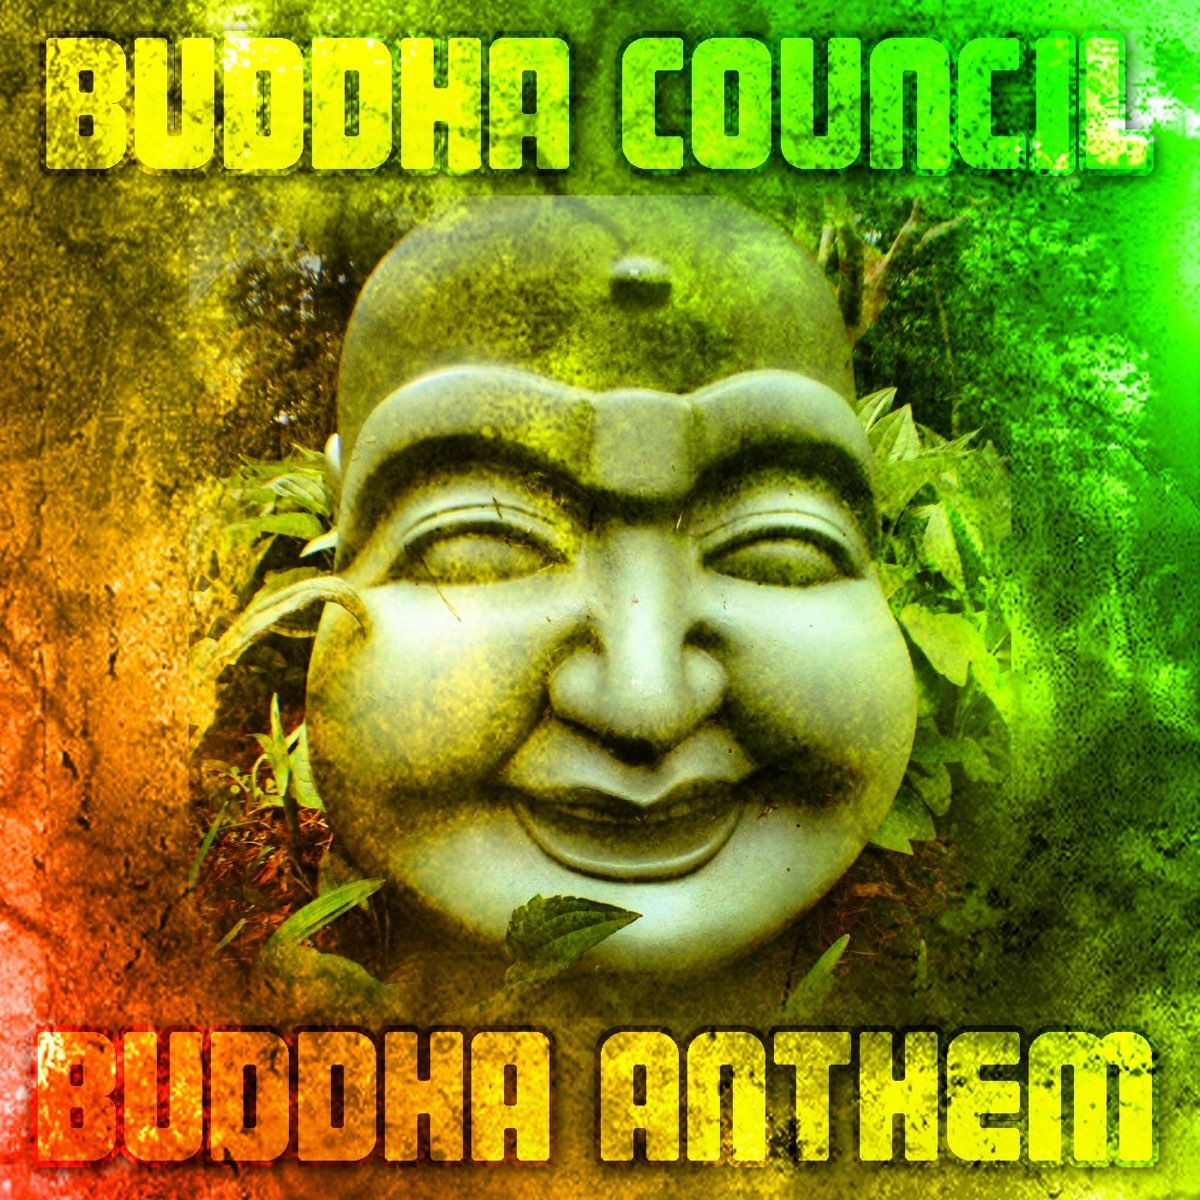 Будда слушает аудиокнига. Будда слушает. Смеющийся Будда музыкальный. Альбом Будды бандит обложка. Олджи Будда песни.